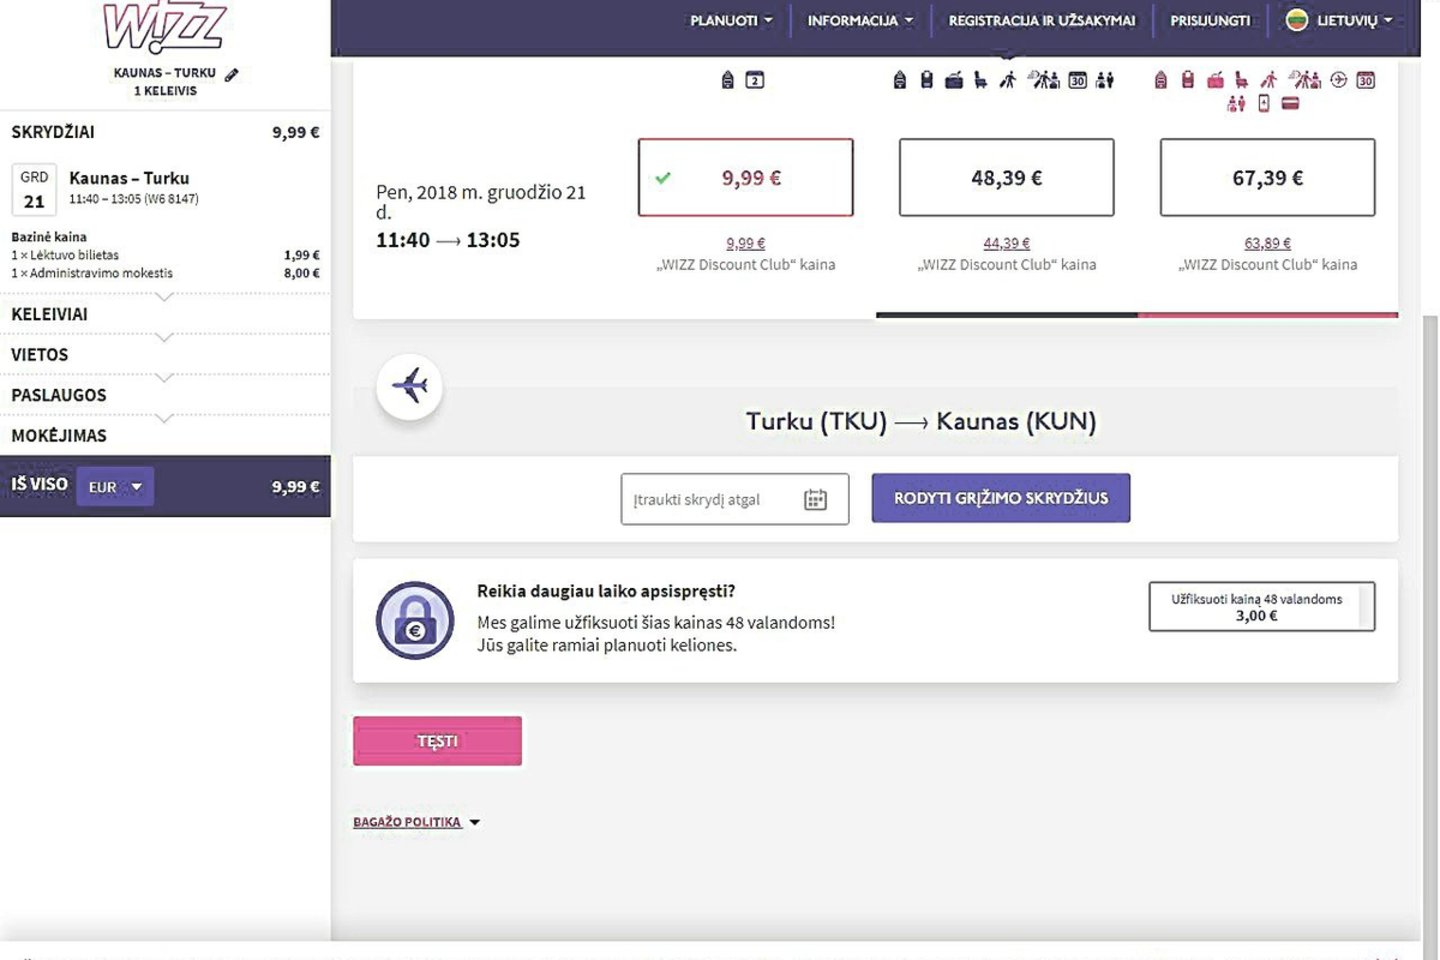 Nors teismas uždraudė, bendrovė „Zigzag Travel“ toliau naudoja interneto svetaines su žodžiu „wizzair“ (kairėje), o per ją platinami bilietai brangesni nei oficialiame Vengrijos skrydžių įmonės portale.